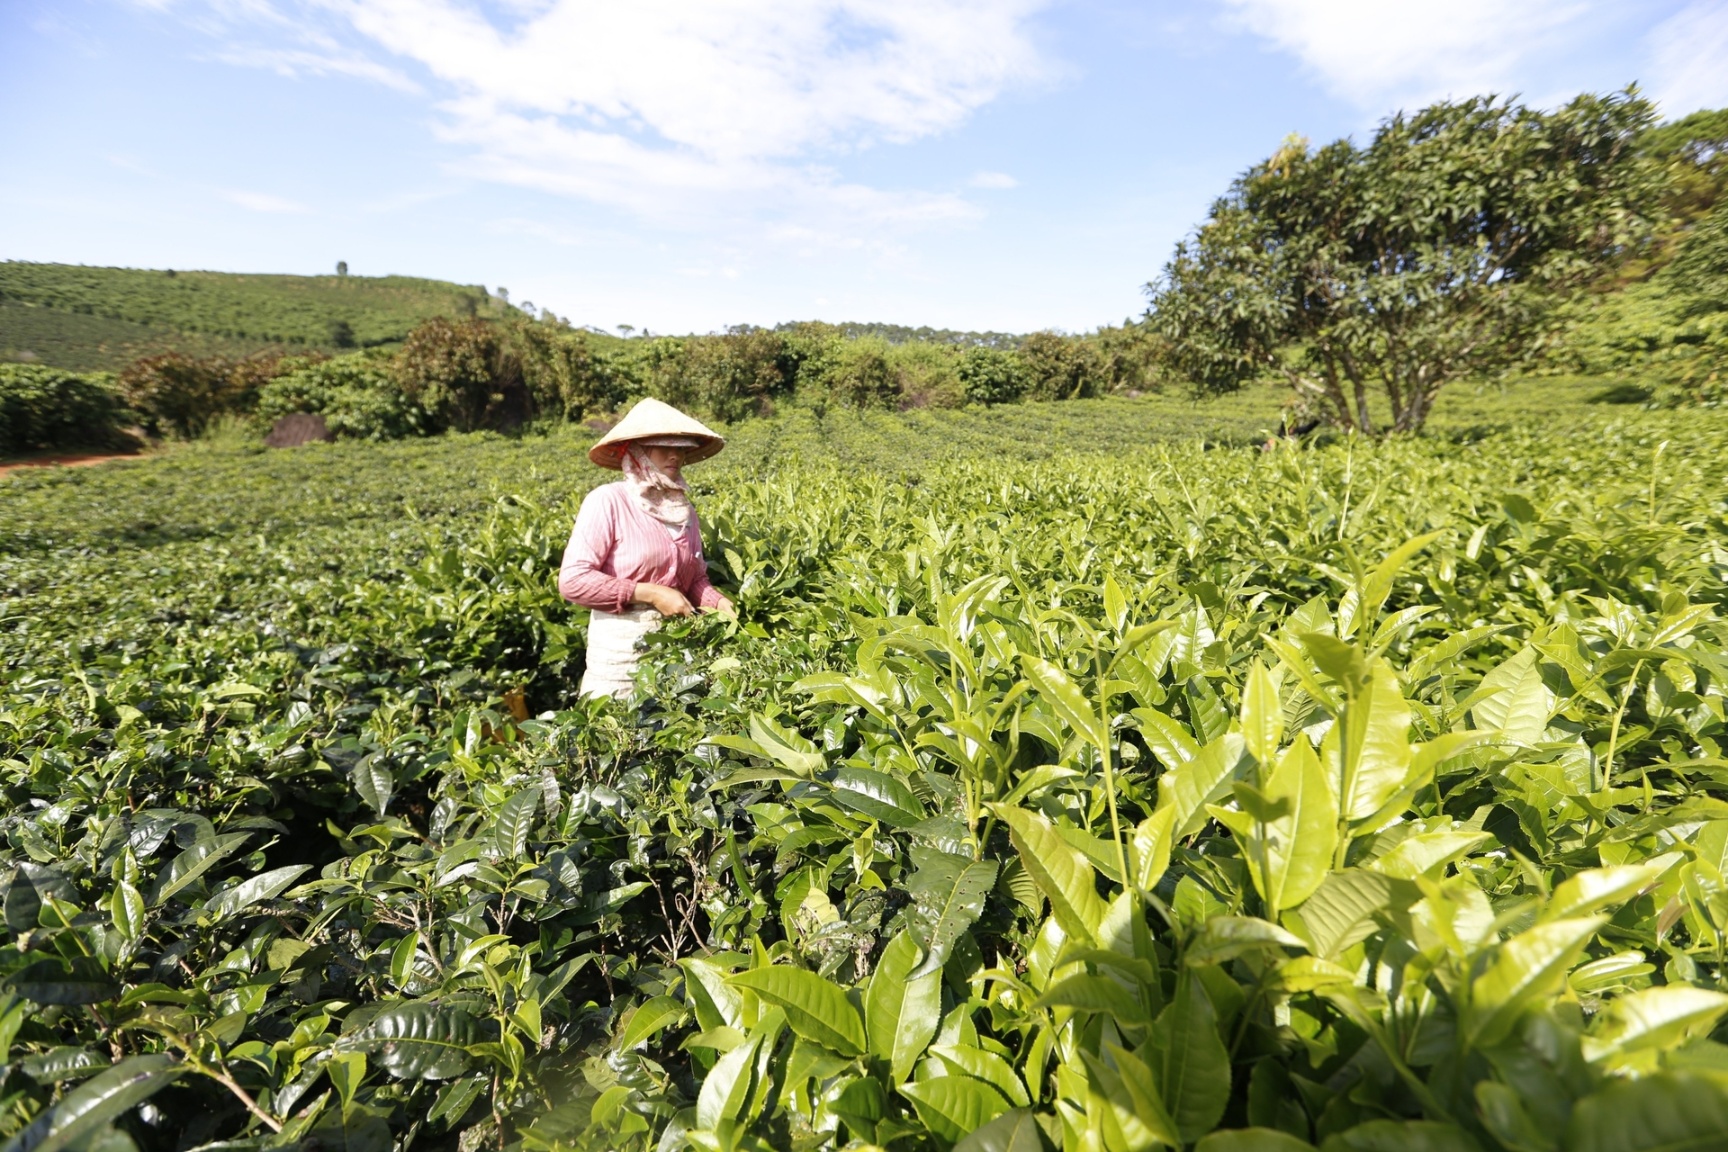 Ngành nông nghiệp tỉnh Lâm Đồng đề nghị các đơn vị sản xuất, kinh doanh không sử dụng hóa chất nhuộm chè, tăng cường quản lý chất lượng sản phẩm. Ảnh: C.T.